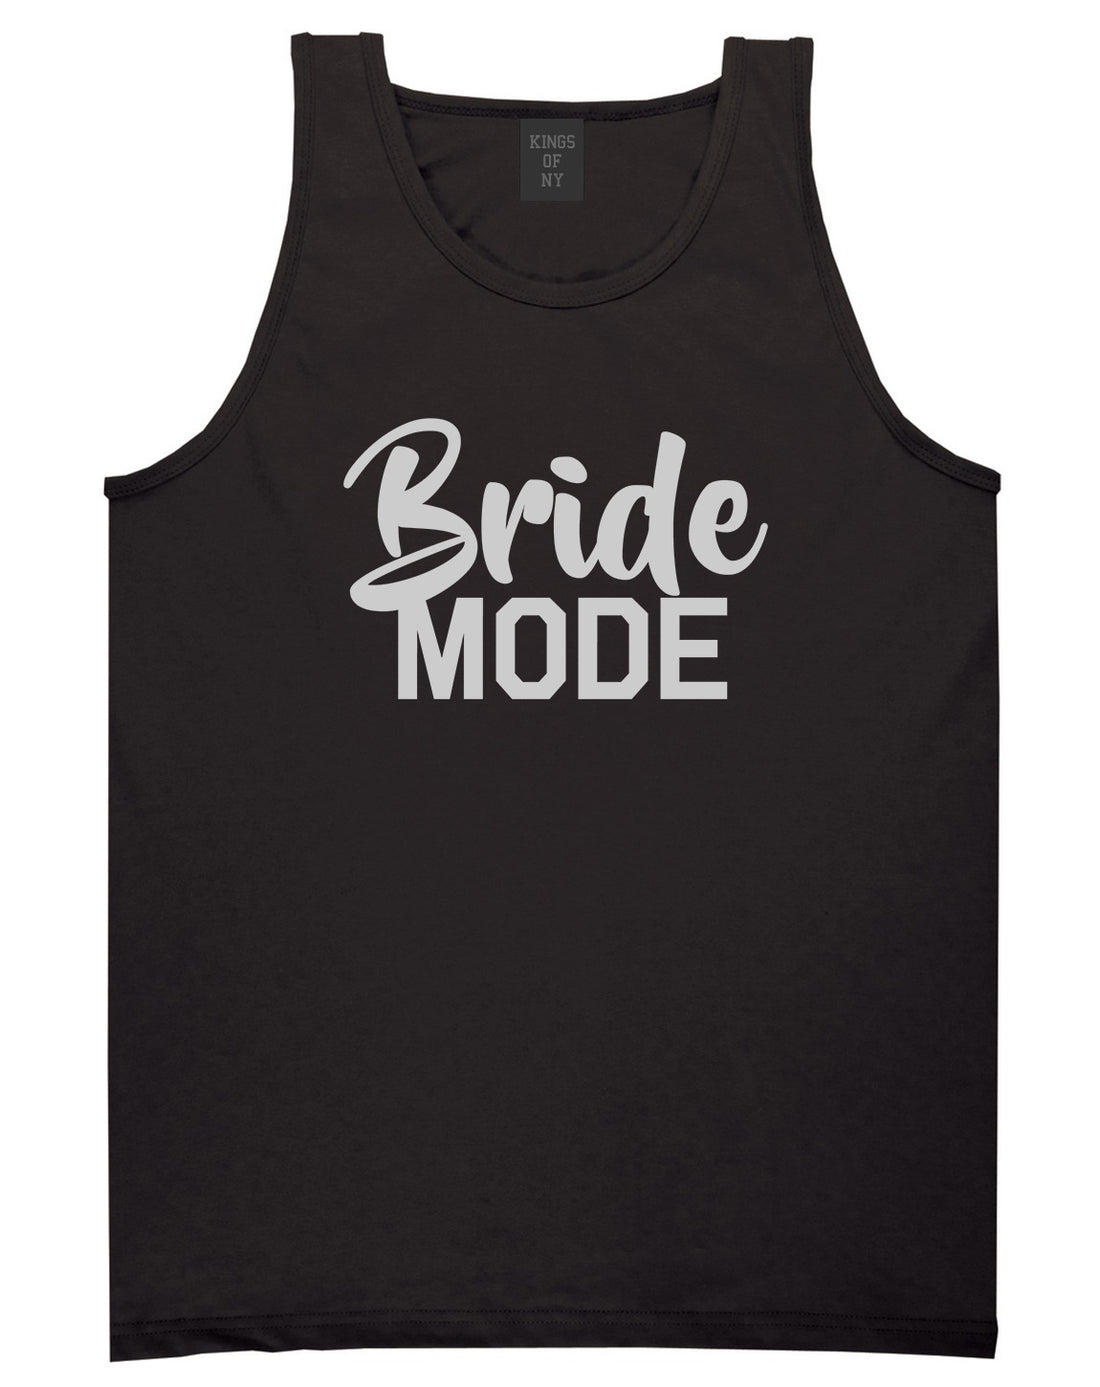 Bride Mode Bridal Mens Black Tank Top Shirt by KINGS OF NY